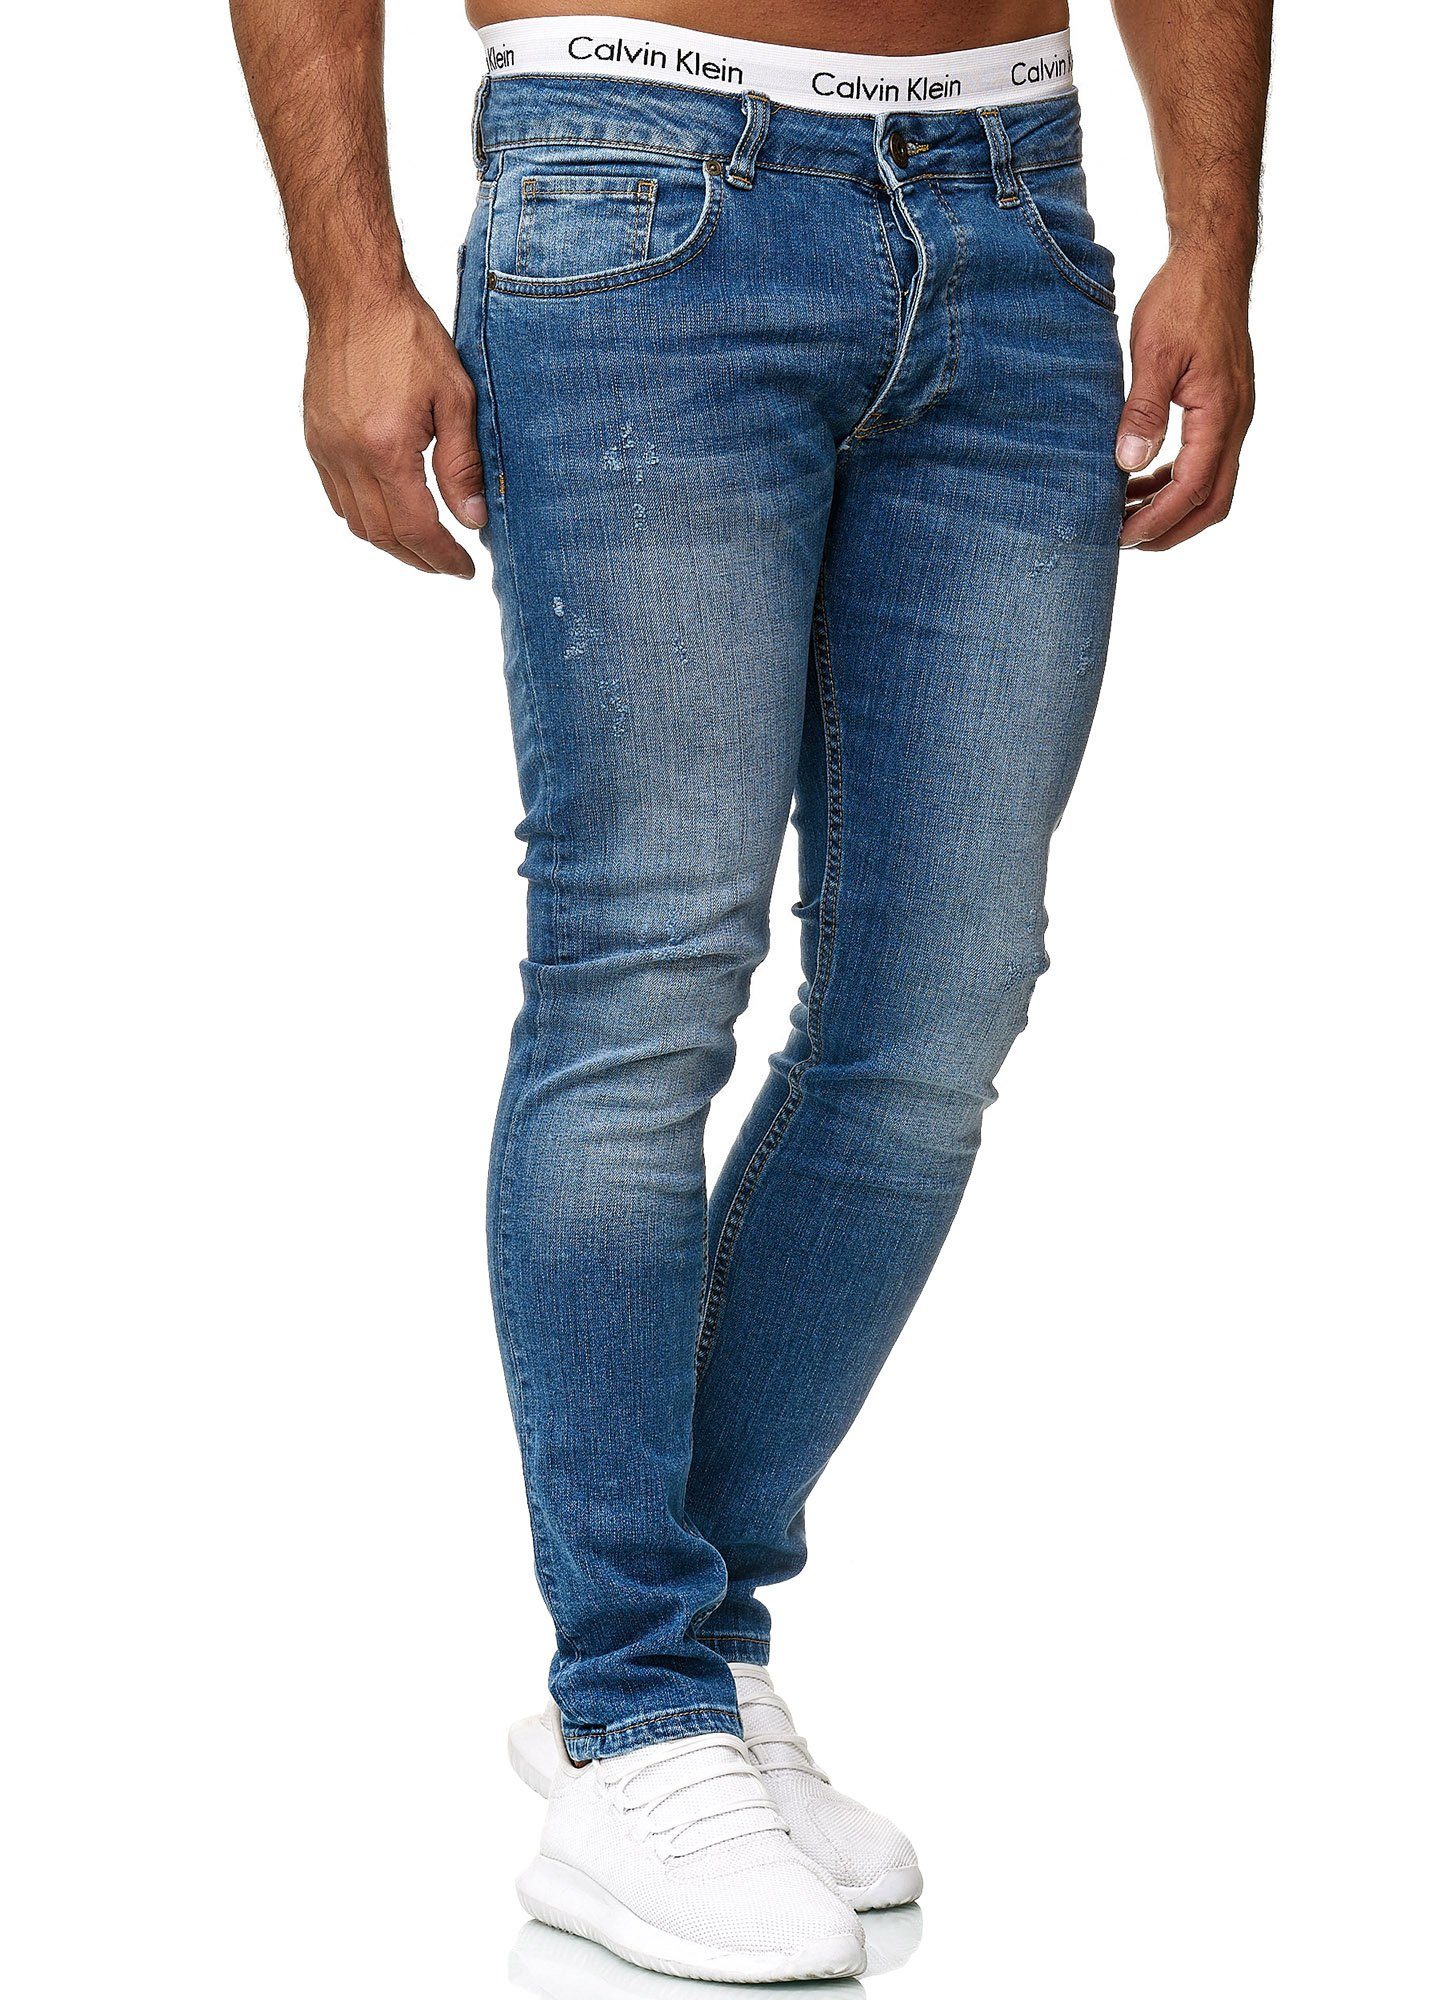 Code47 Skinny-fit-Jeans Code47 Basic Skinny Hose Regular 601 Used Blue Herren Jeanshose Fit Designer Jeans Old